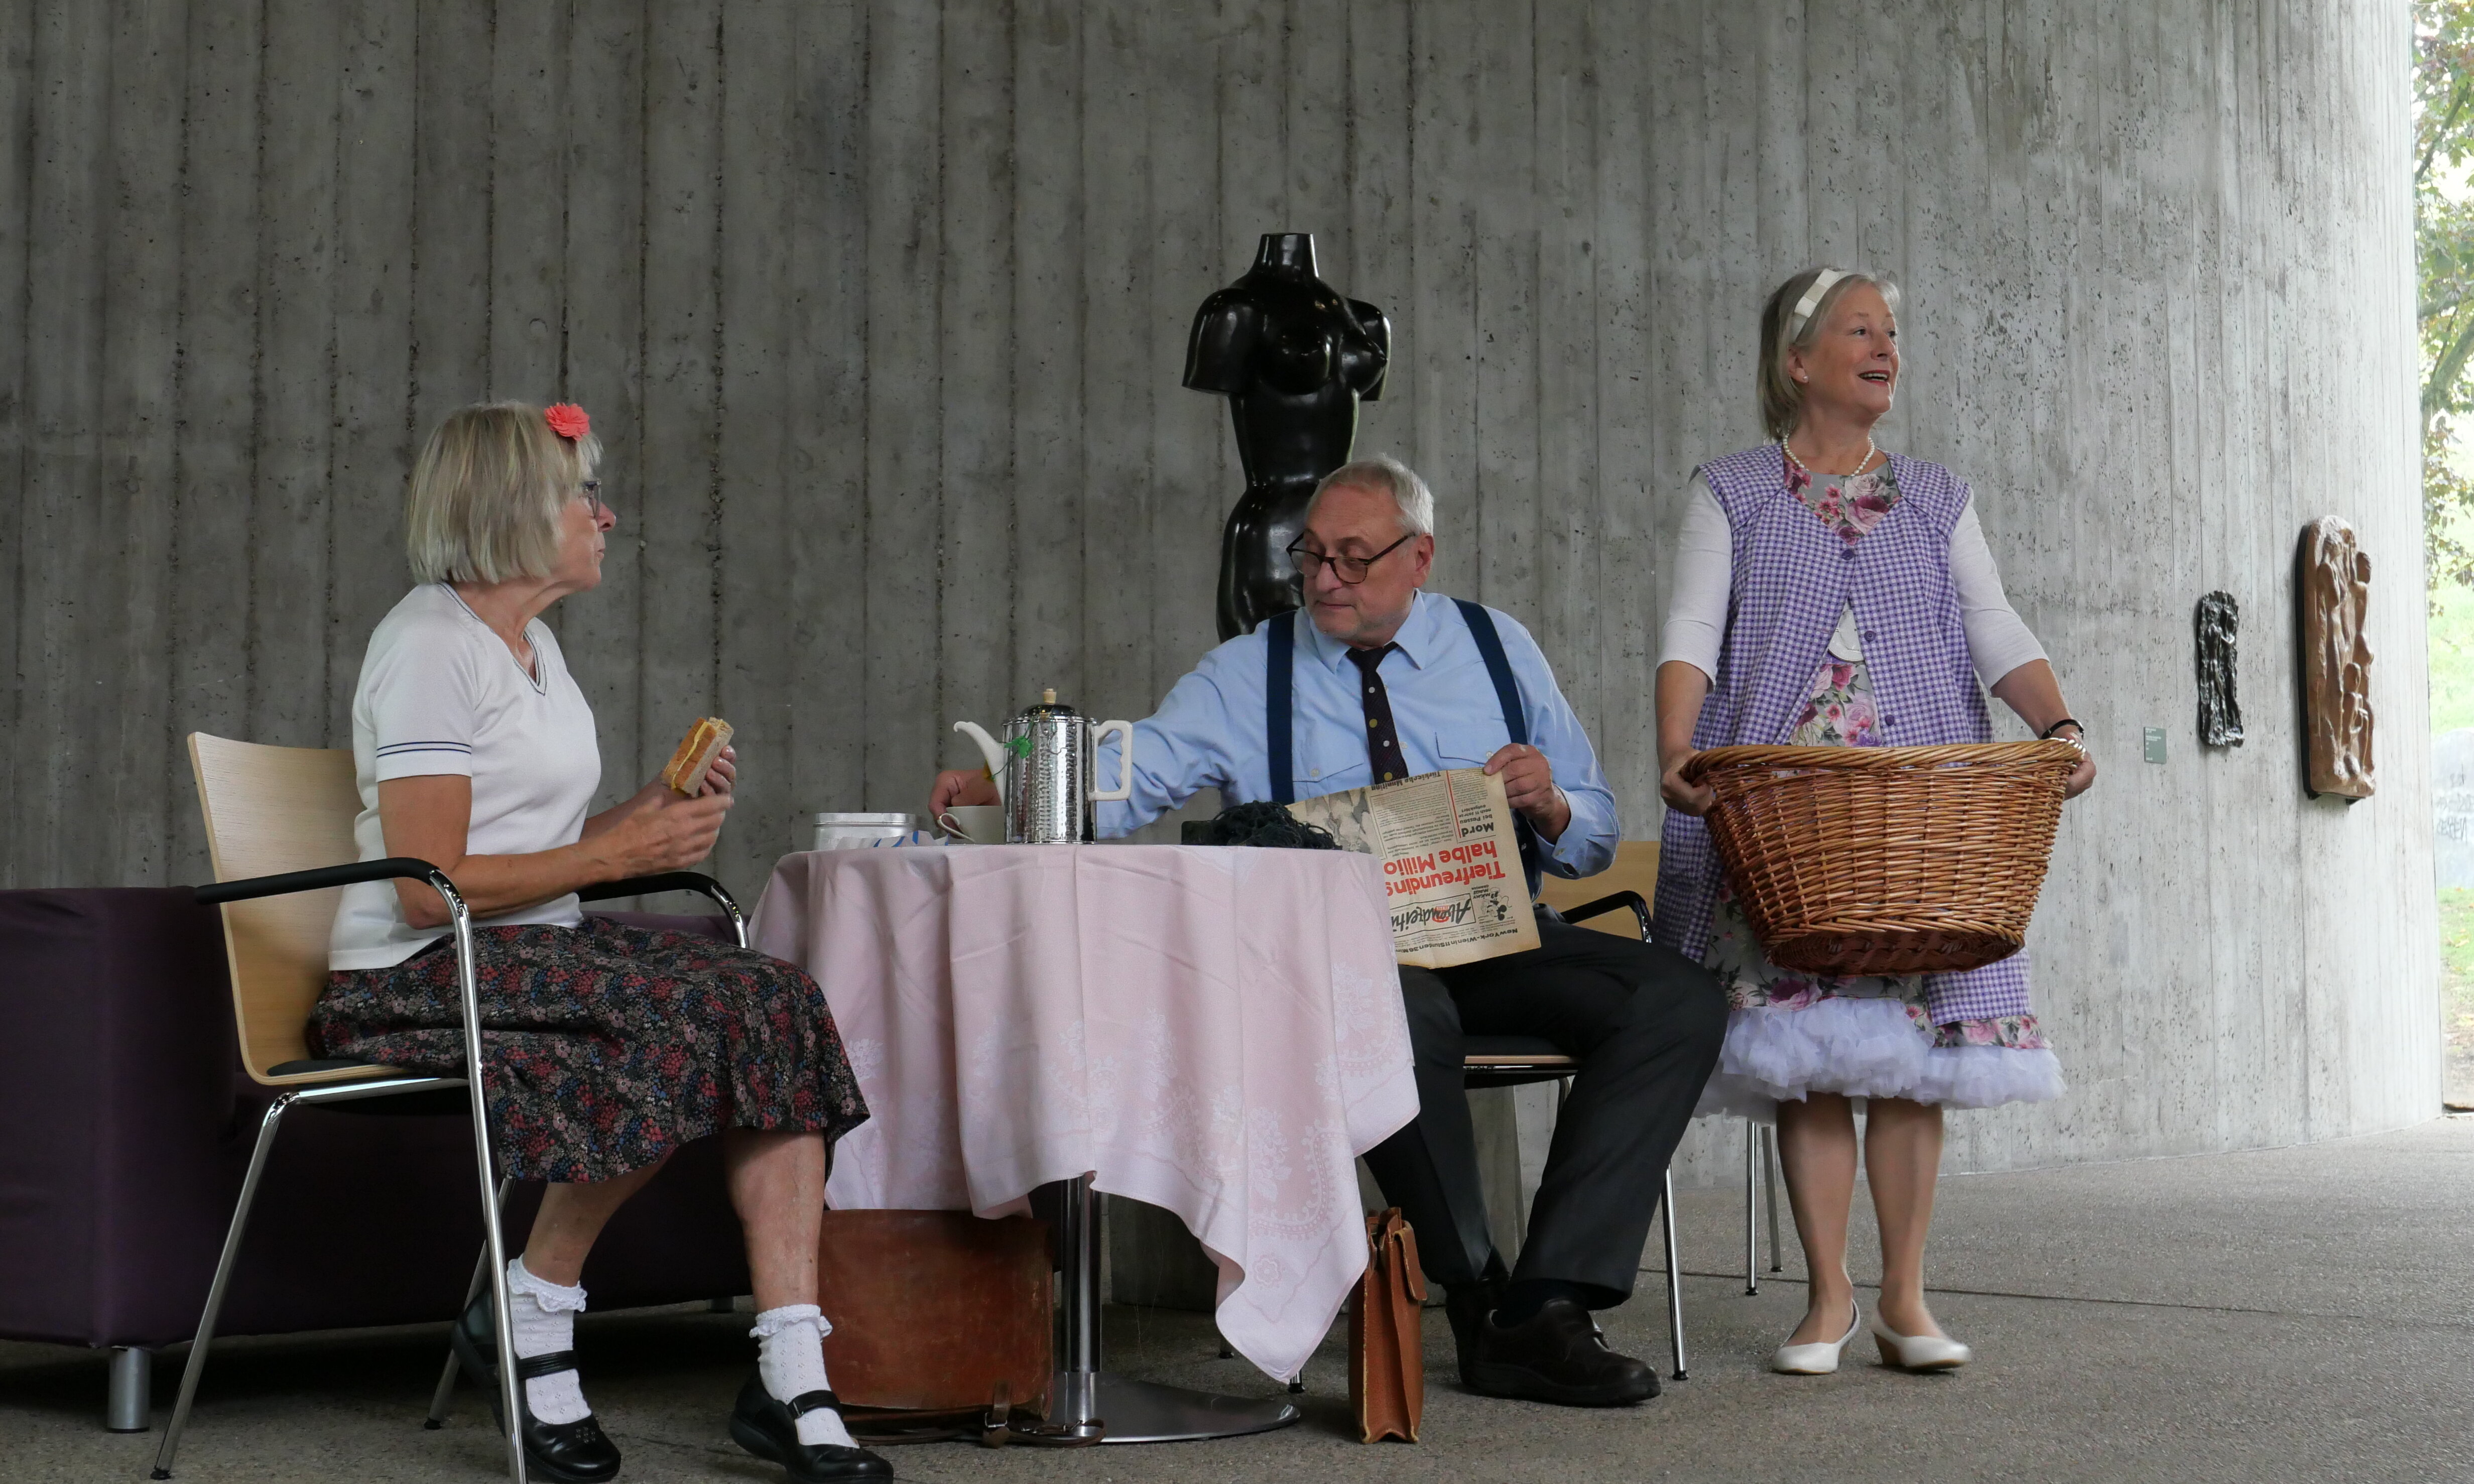 Theaterstück auf der Bühne: Zwei Personen sitzen am Tisch, eine Person hält einen Wäschekorb in der Hand